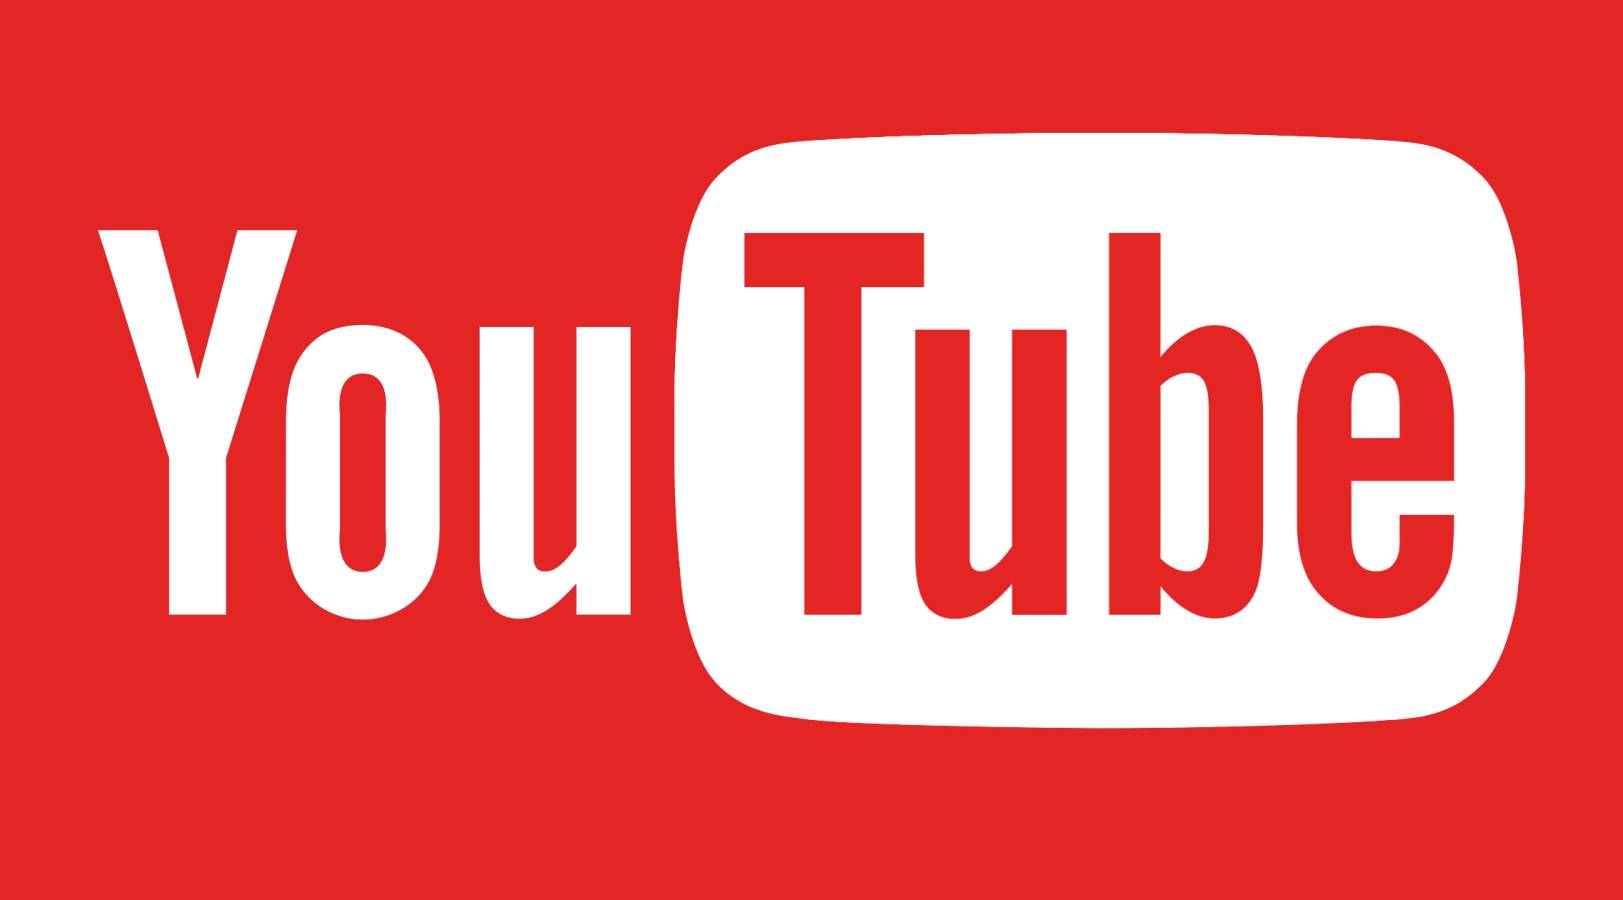 YouTube Uusi päivitys julkaistu kaikille käyttäjille tänään